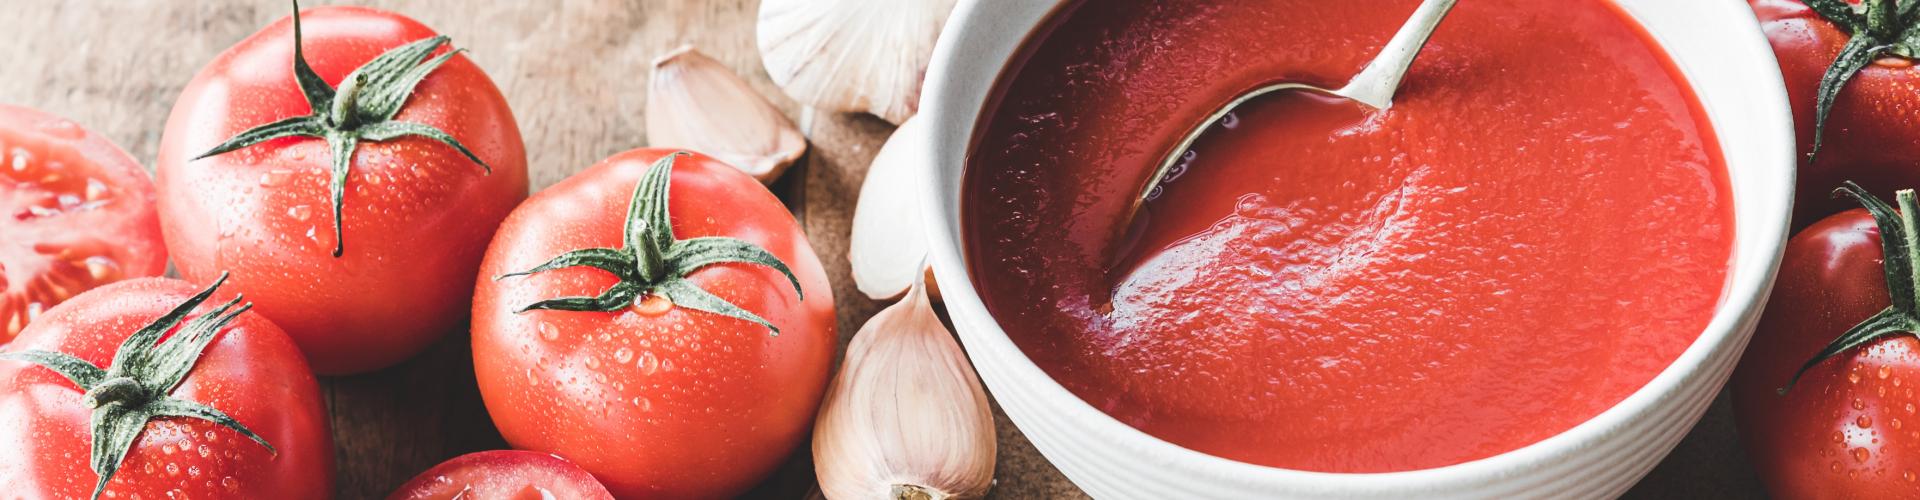 Comment préparer son propre coulis de tomates ? La vraie recette